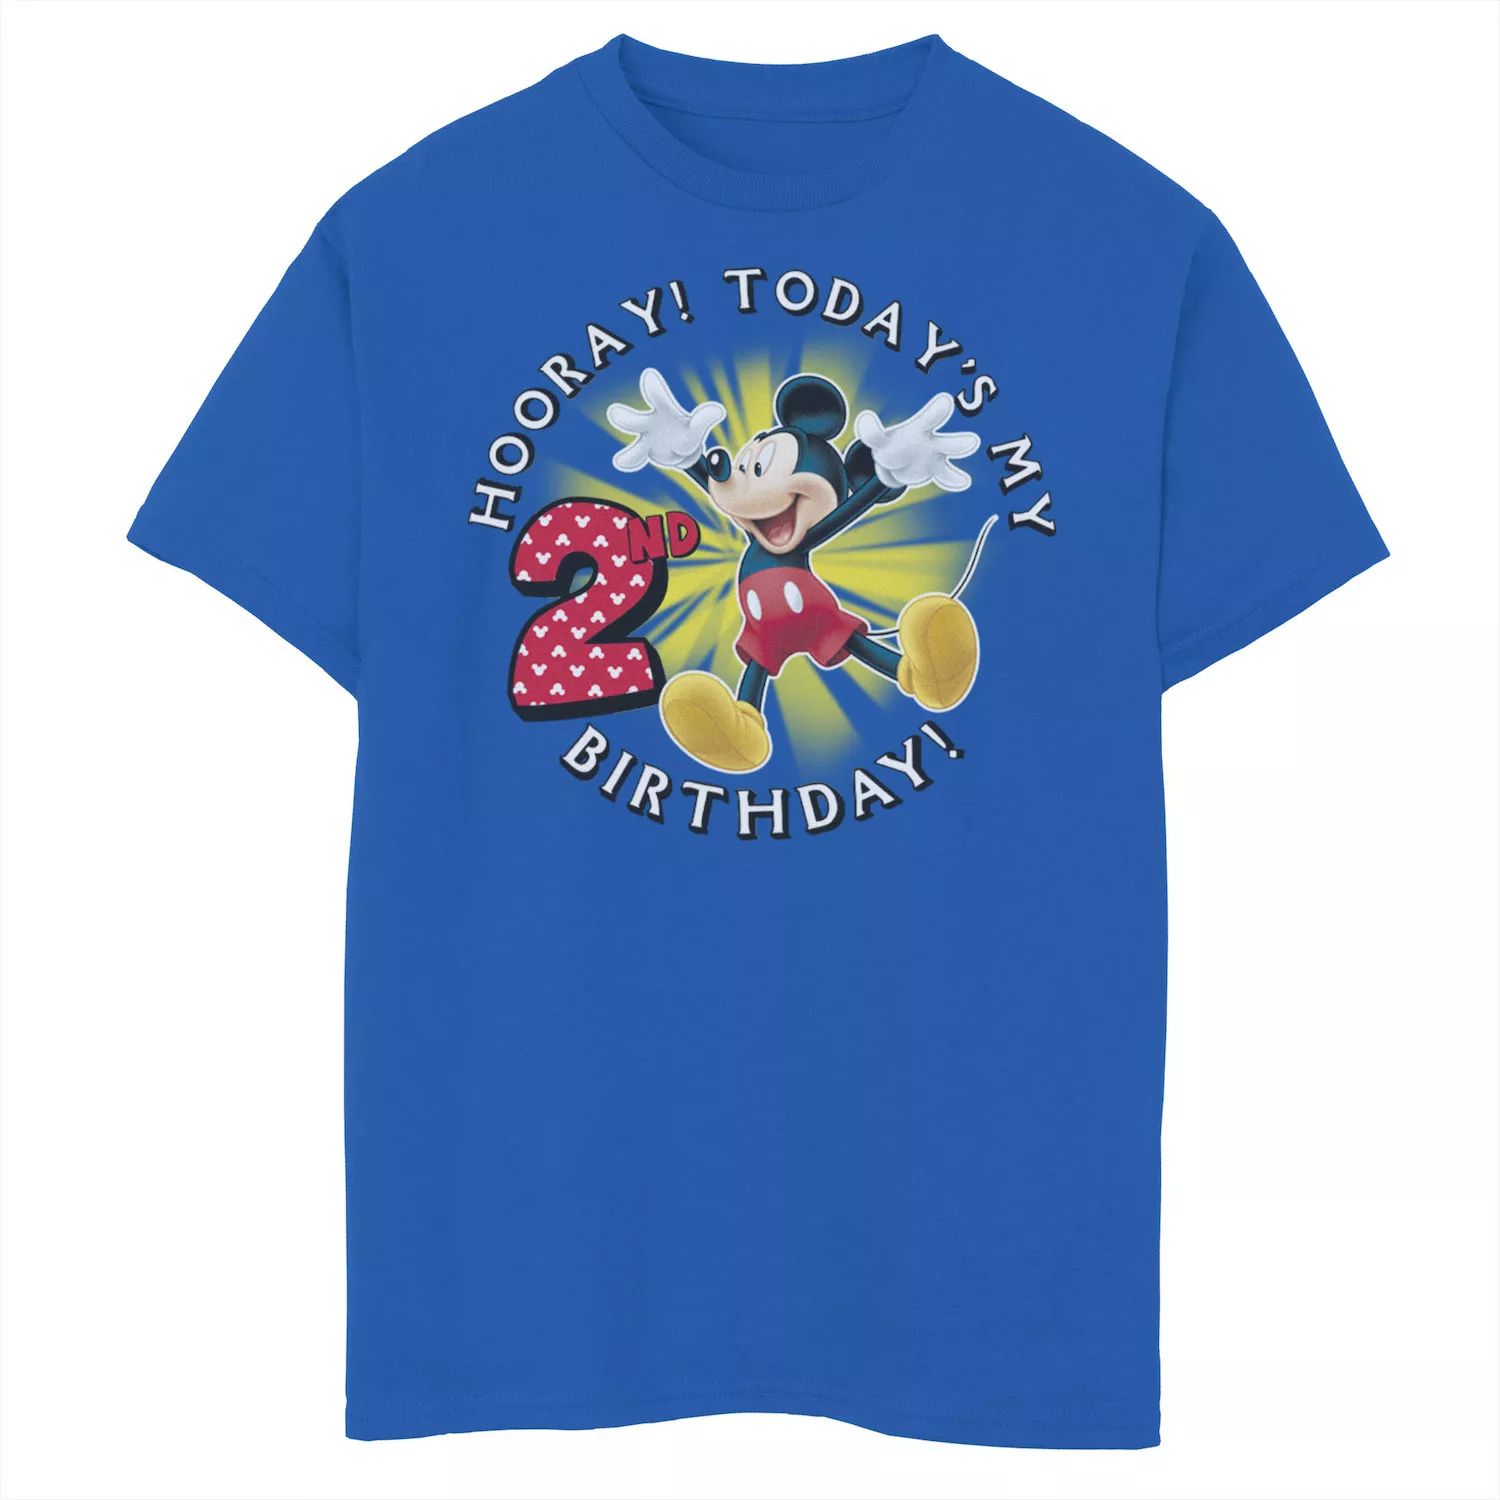 Микки Маус Диснея, мальчики 8–20 лет Ура! Футболка с рисунком «Мой второй день рождения» сегодня Disney микки маус диснея мальчики 8–20 лет ура футболка с рисунком мой 6 й день рождения сегодня disney